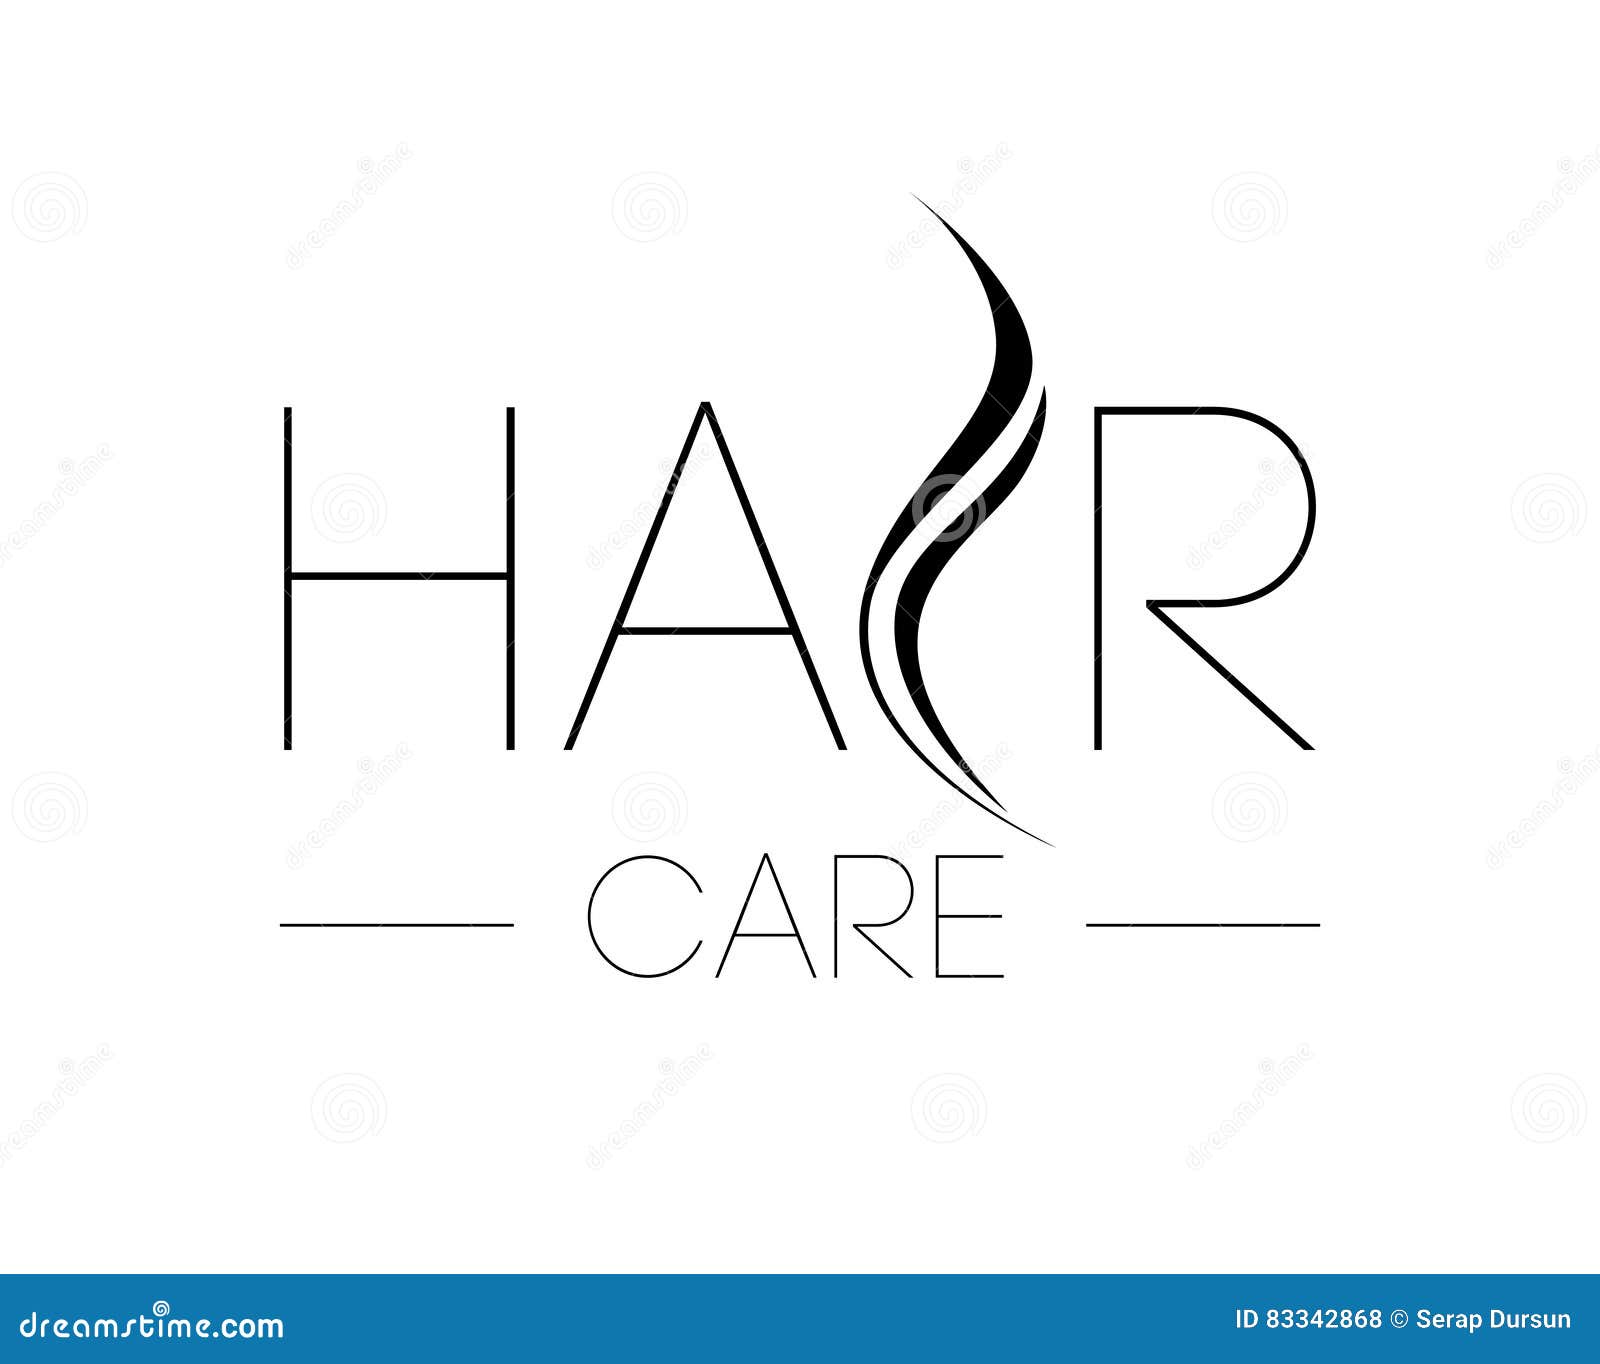 Free Hair Care Logo Designs - DIY Hair Care Logo Maker - Designmantic.com